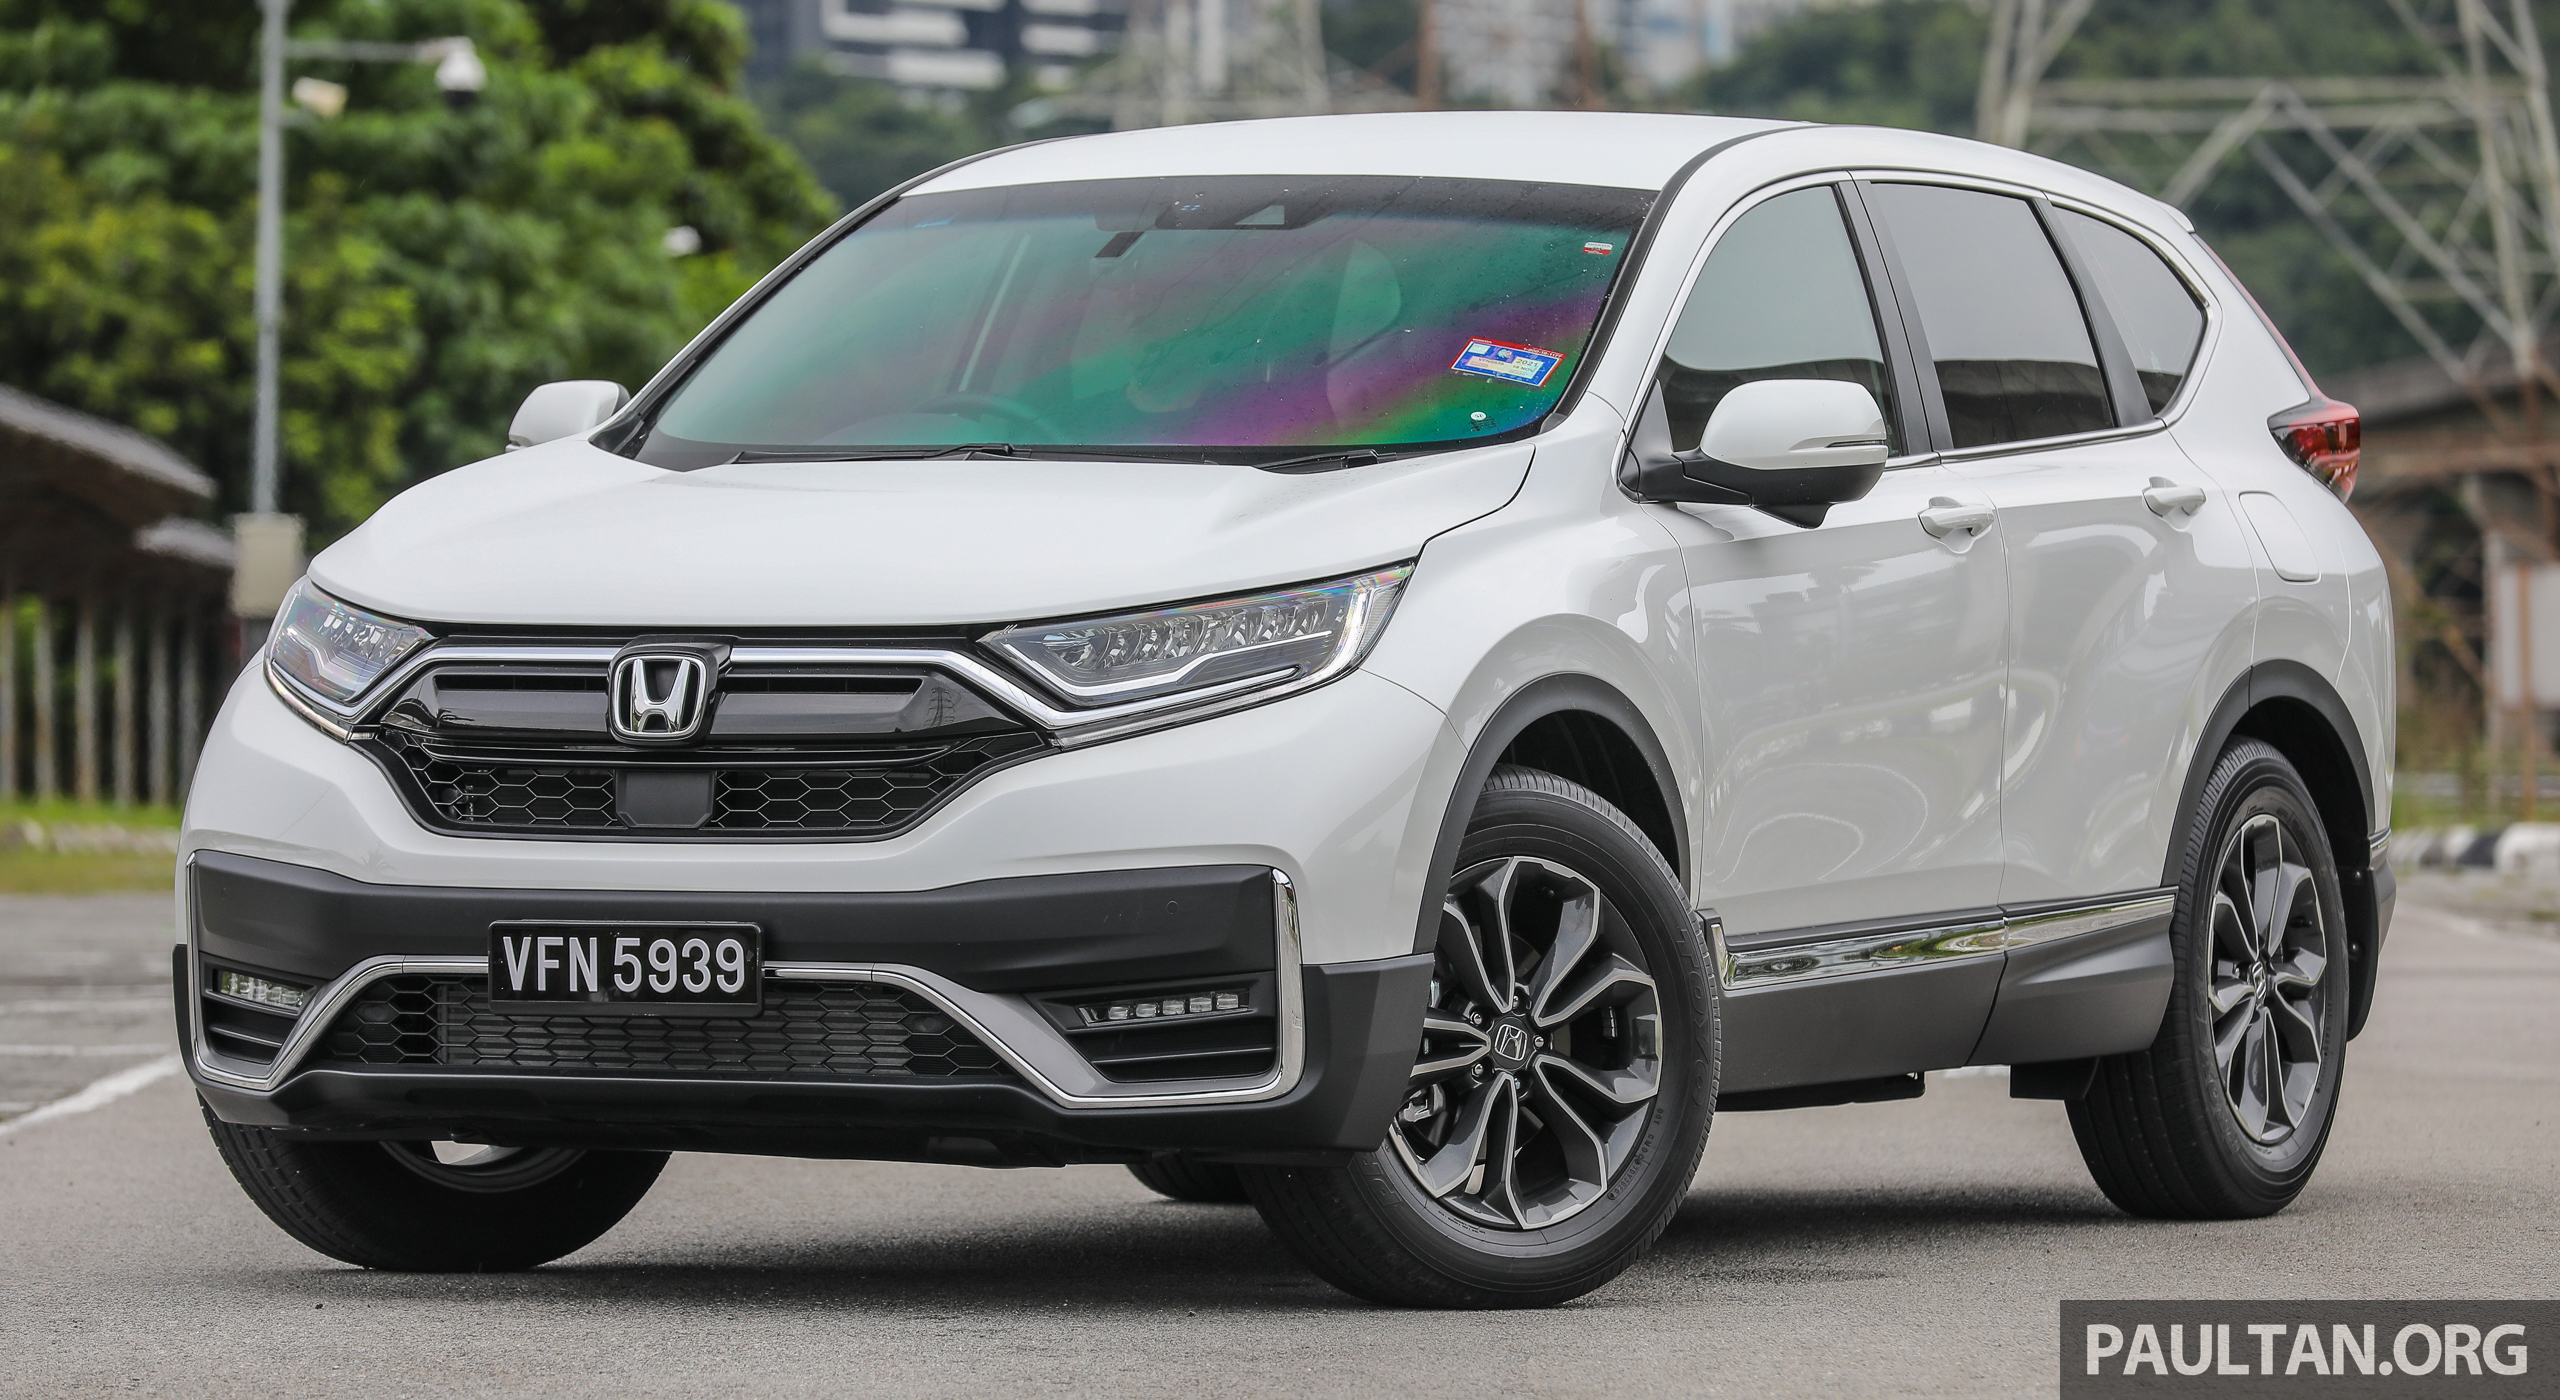 2020 Honda CRV 1.5 TCP 4WD facelift Malaysia_Ext4 Paul Tan's